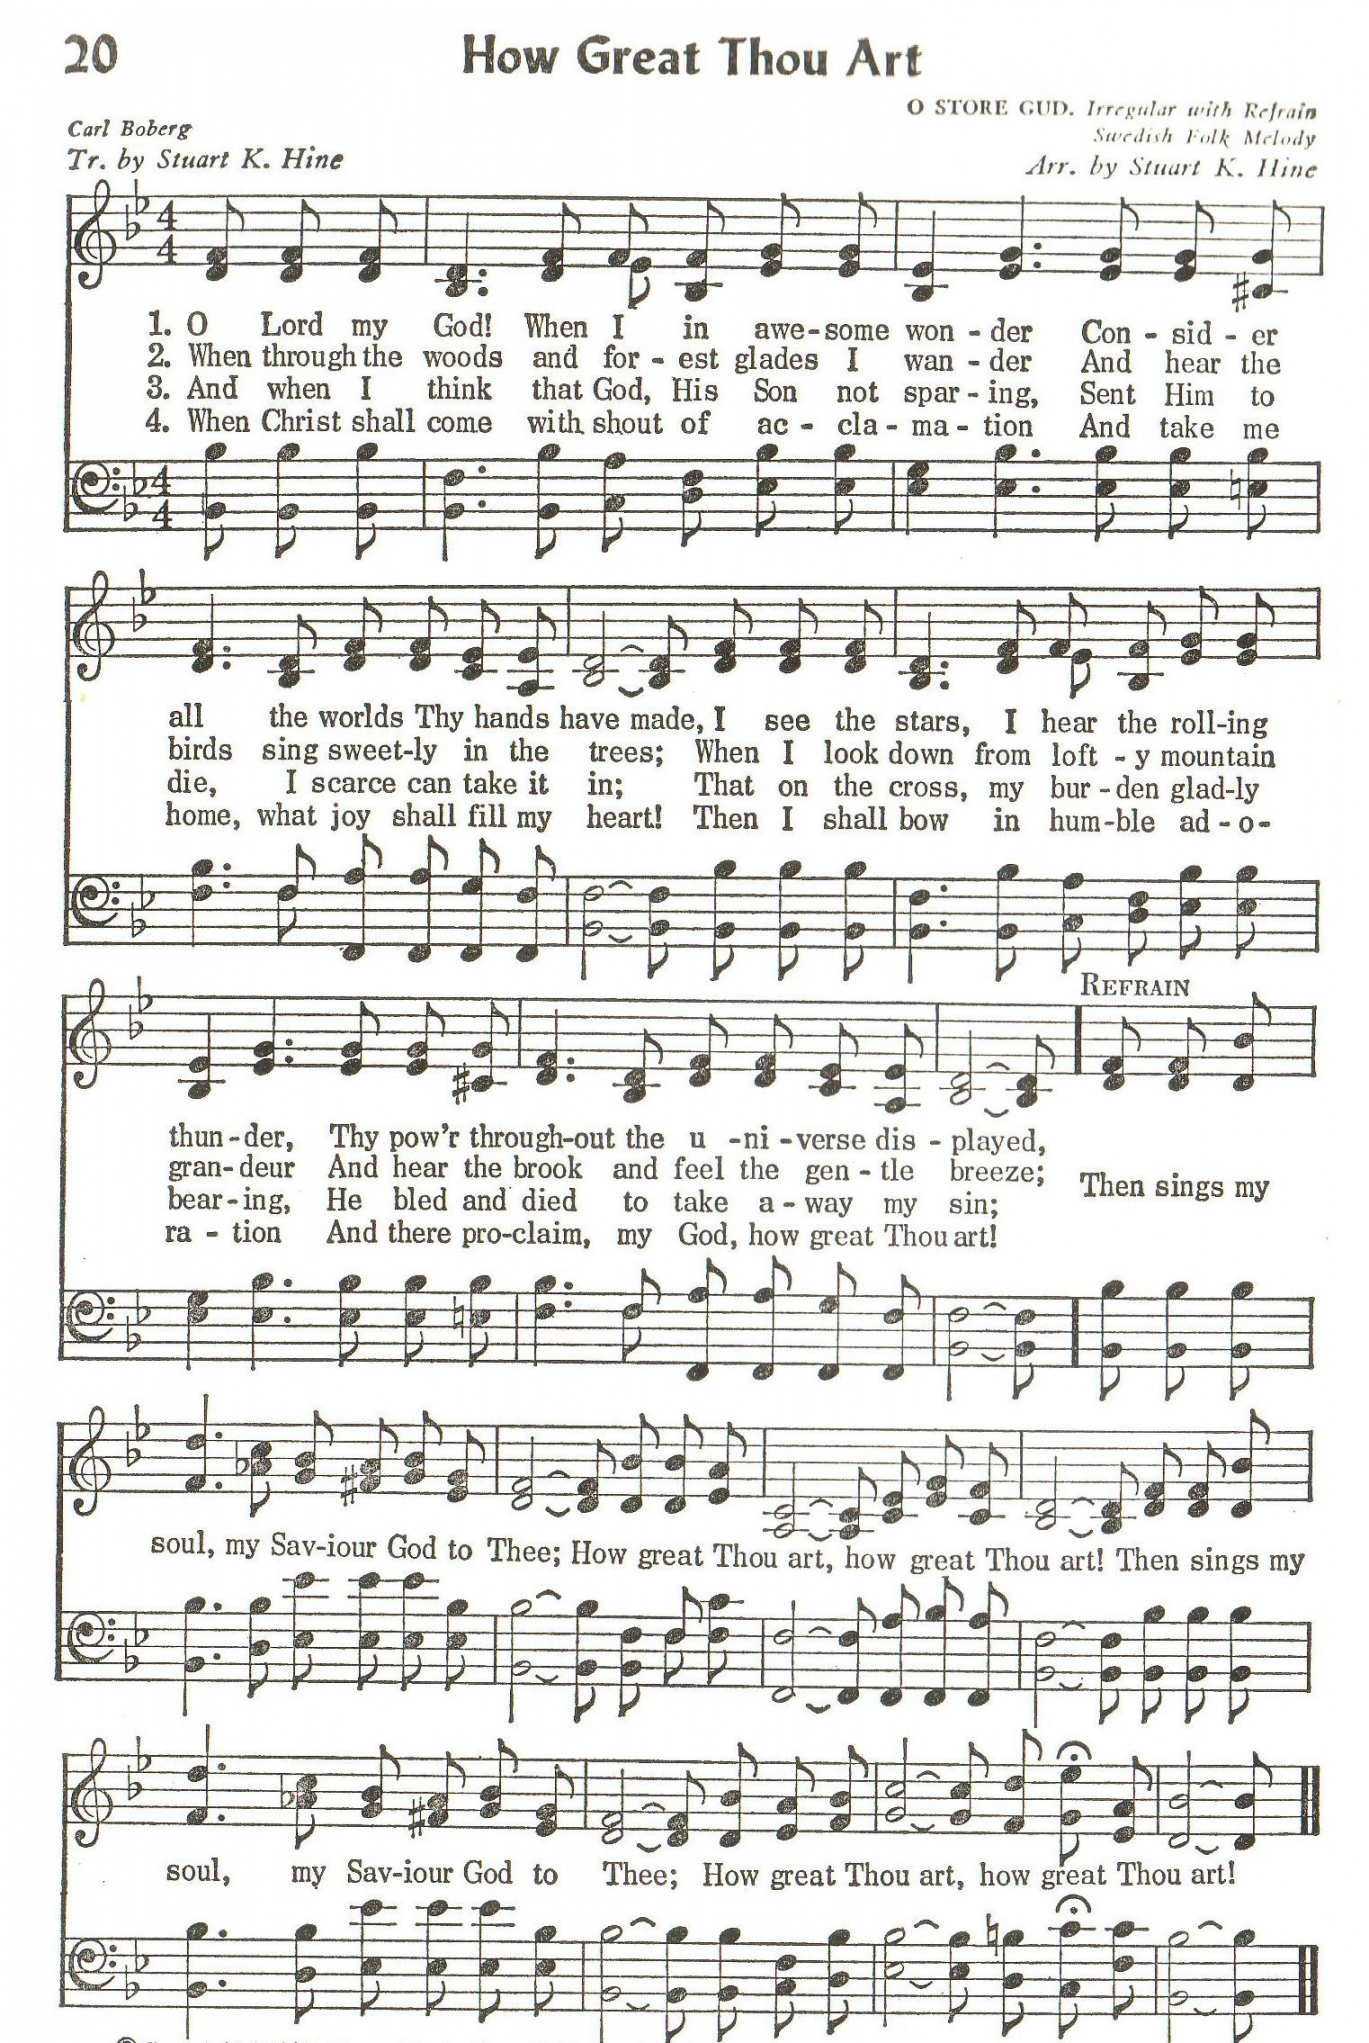 How Great Thou Art (Hymn) SATB  Hymns lyrics, Hymn music  - FREE Printables - Free Printable How Great Thou Art Hymn